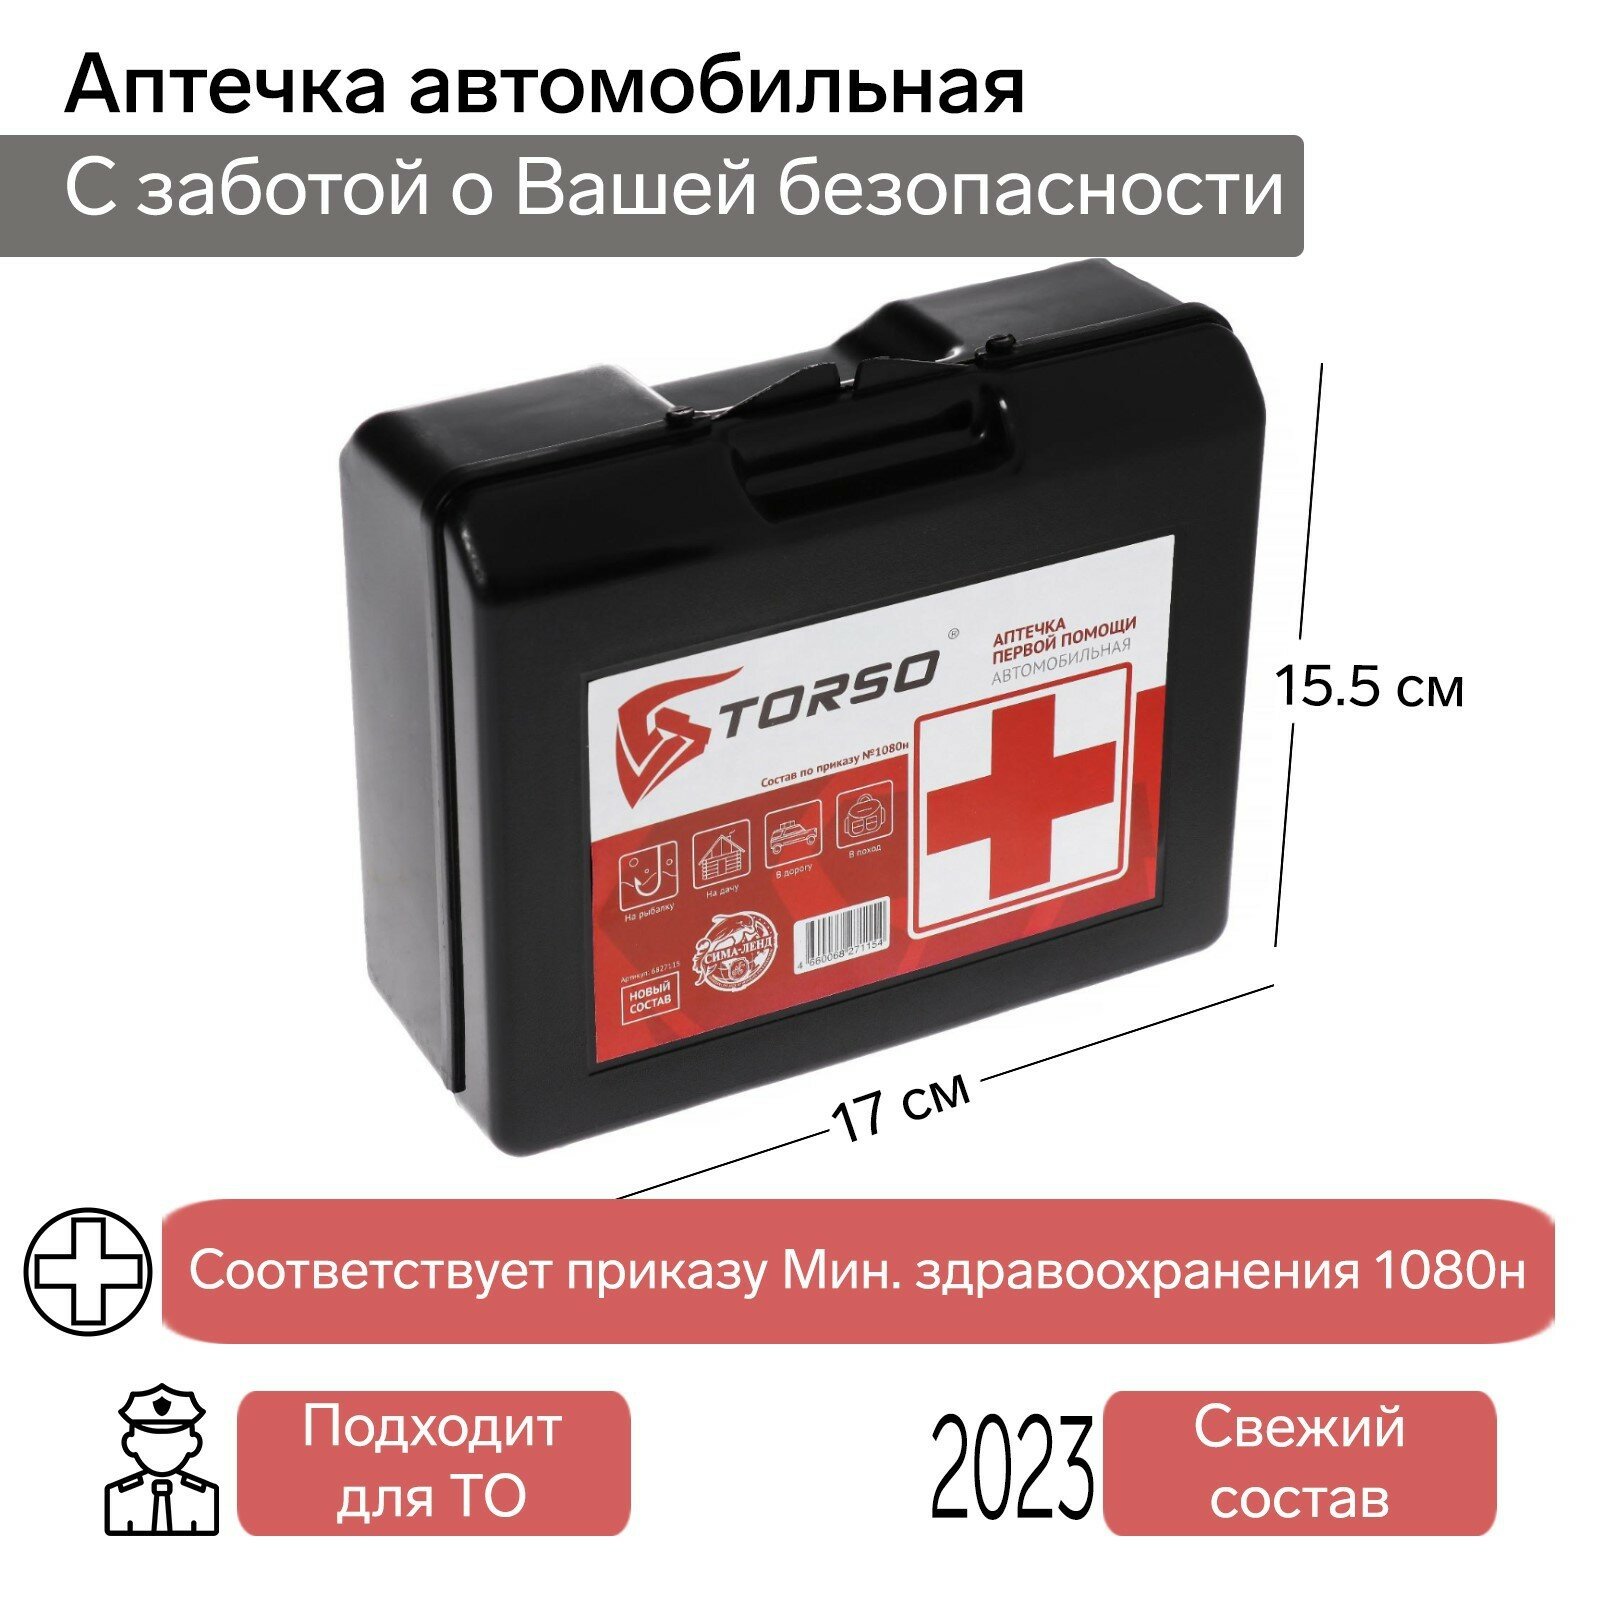 Аптечка автомобильная первой помощи TORSO, состав 2022, по приказу №1080н для Техосмотра